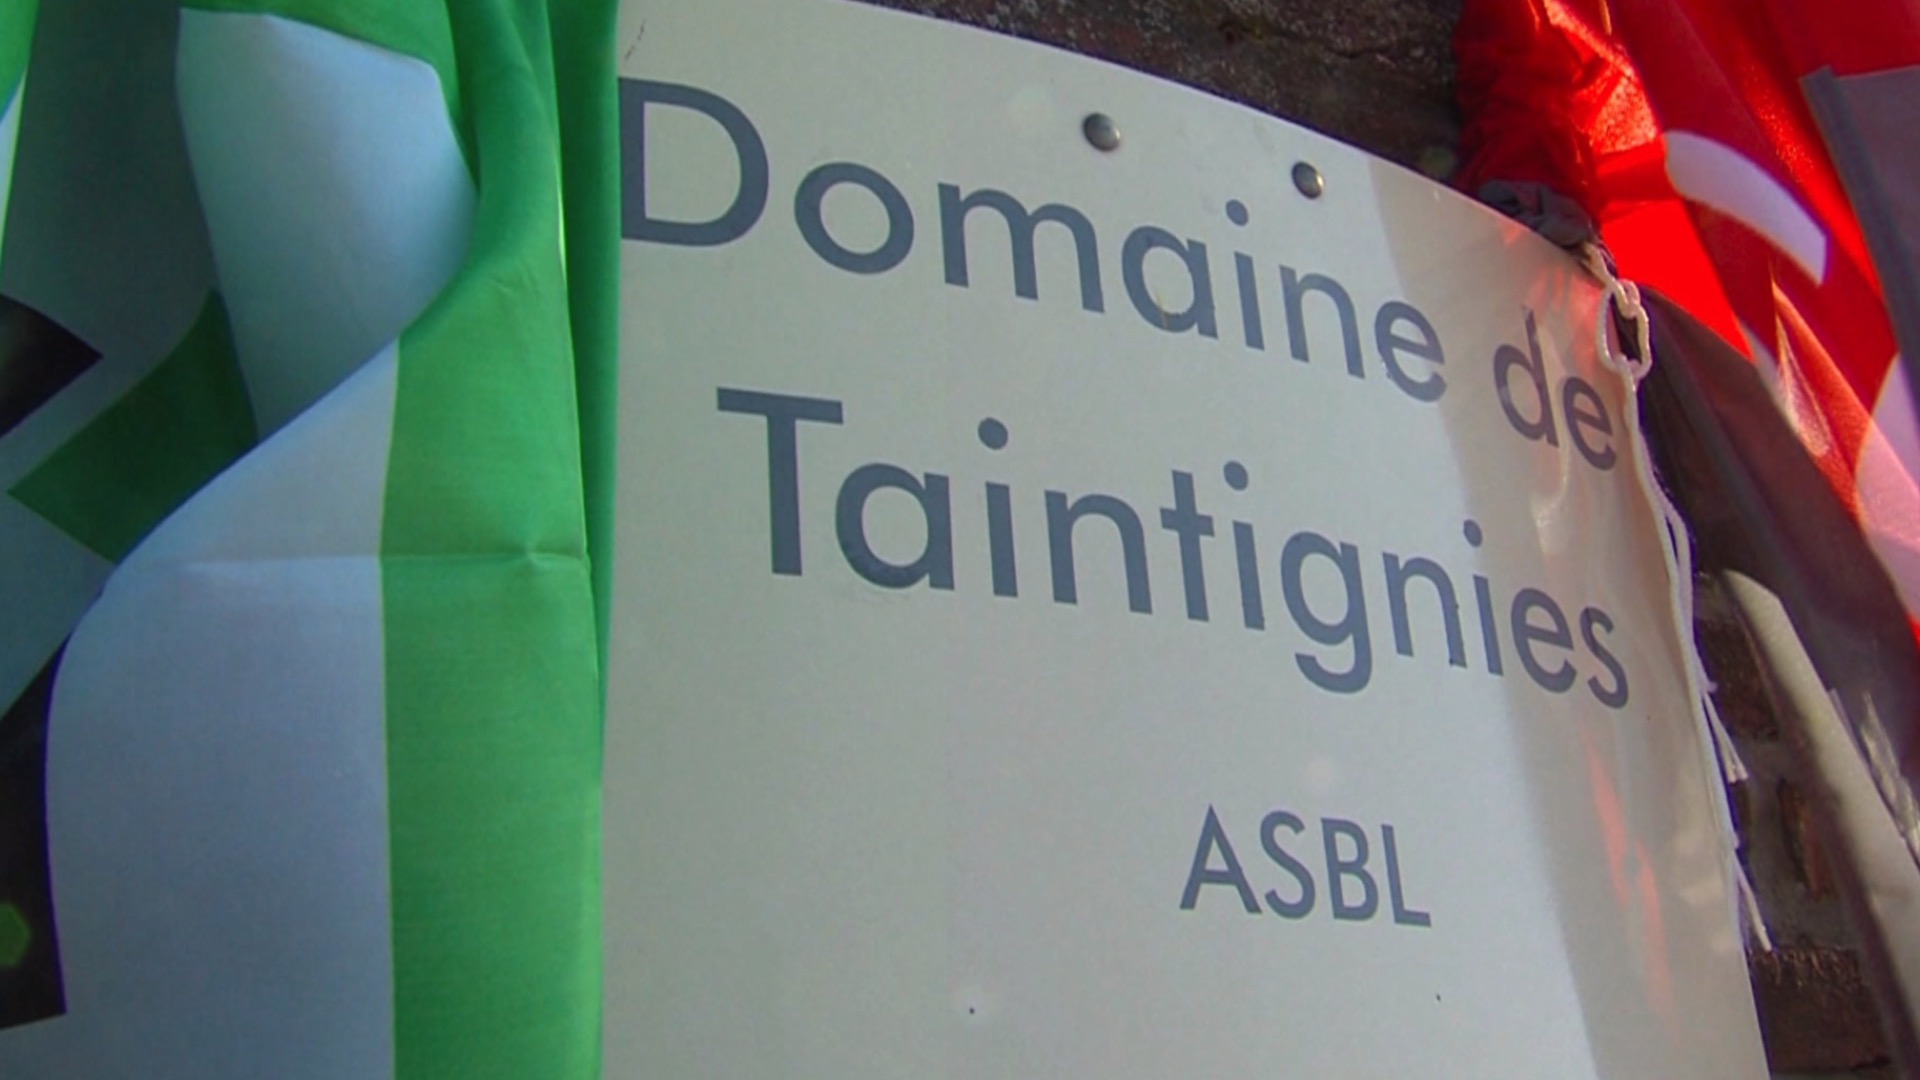 Le Domaine de Taintignies repris par le réseau privé Abilis ?